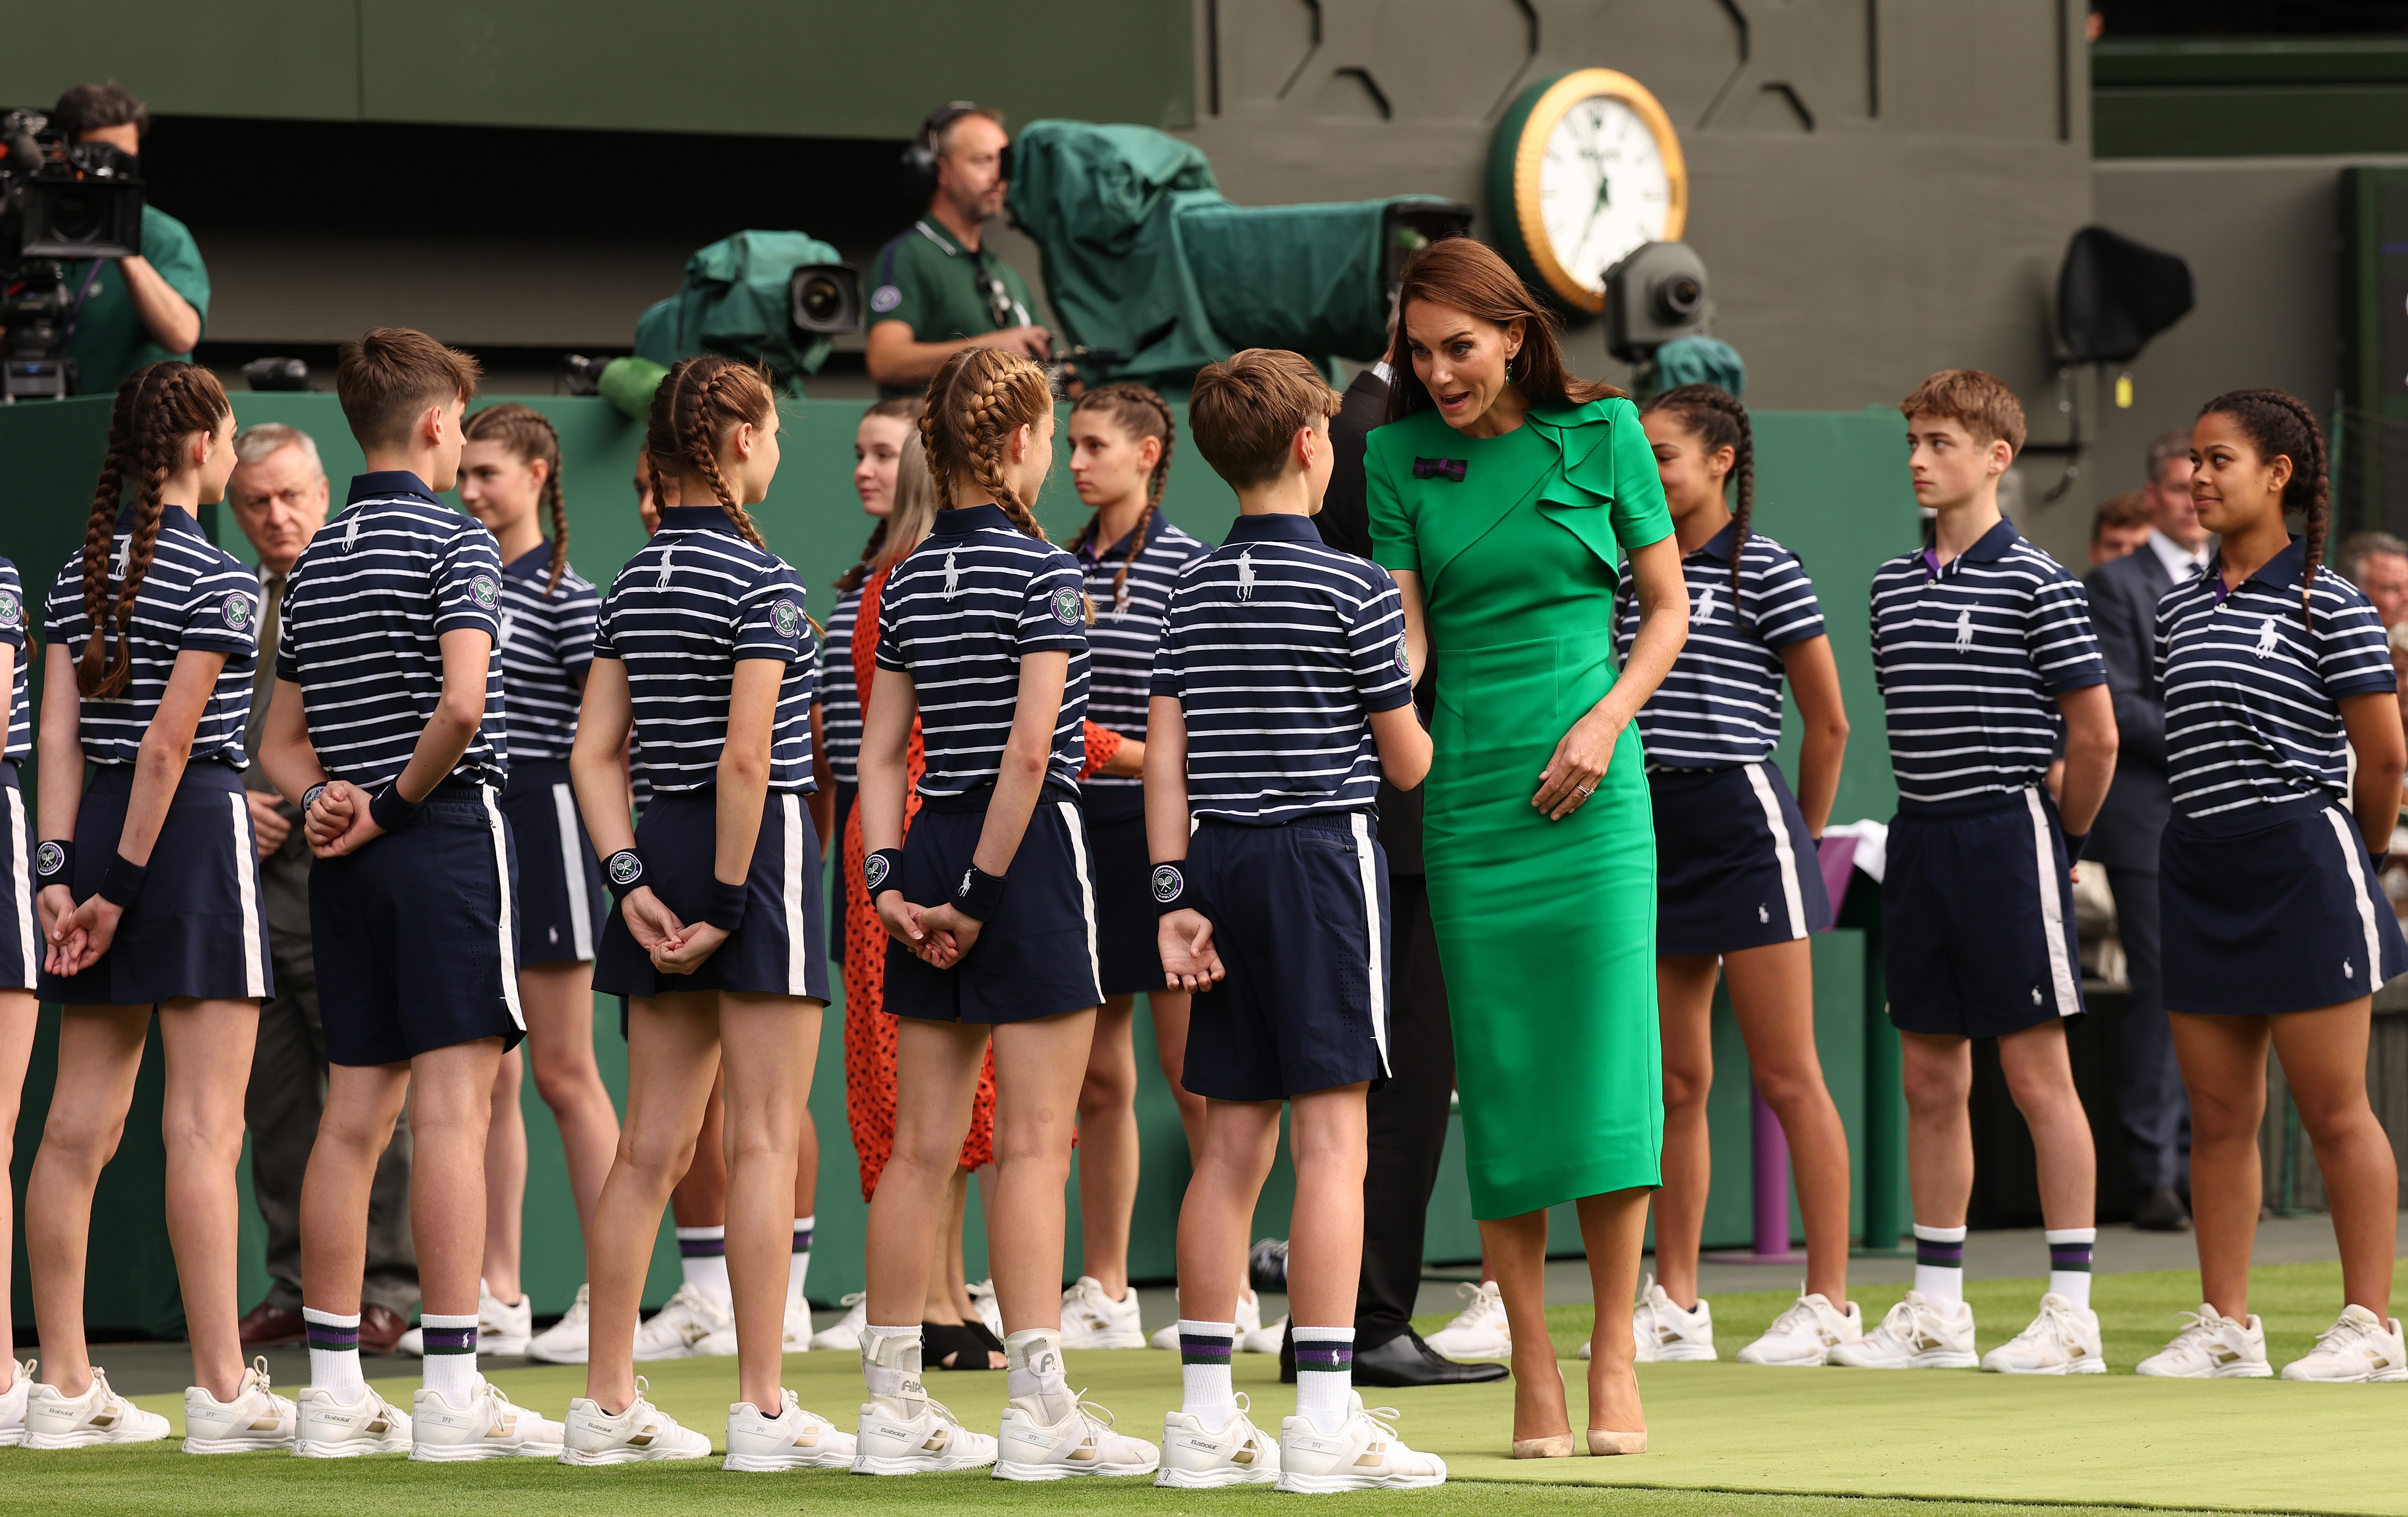 Princess Kate vs. Federer - Wimbledon 2023 Ralph Lauren Ball Boy Uniform